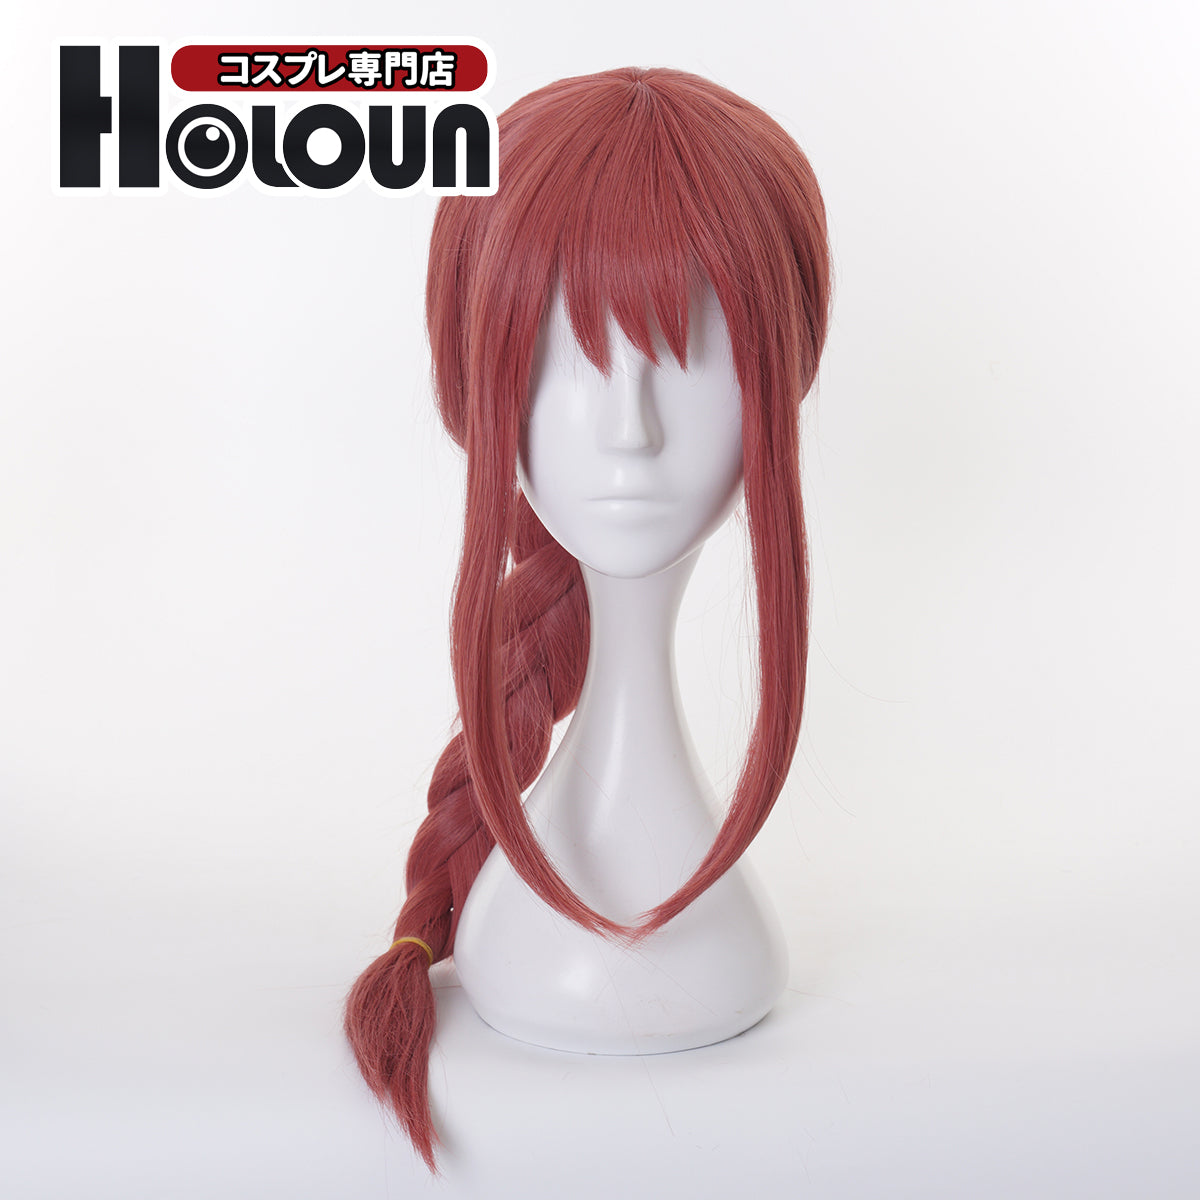 HOLOUN Anime Cosplay Universal Wig For Chainsaw Makima Fake Hair Halloween Christmas Party Gift New